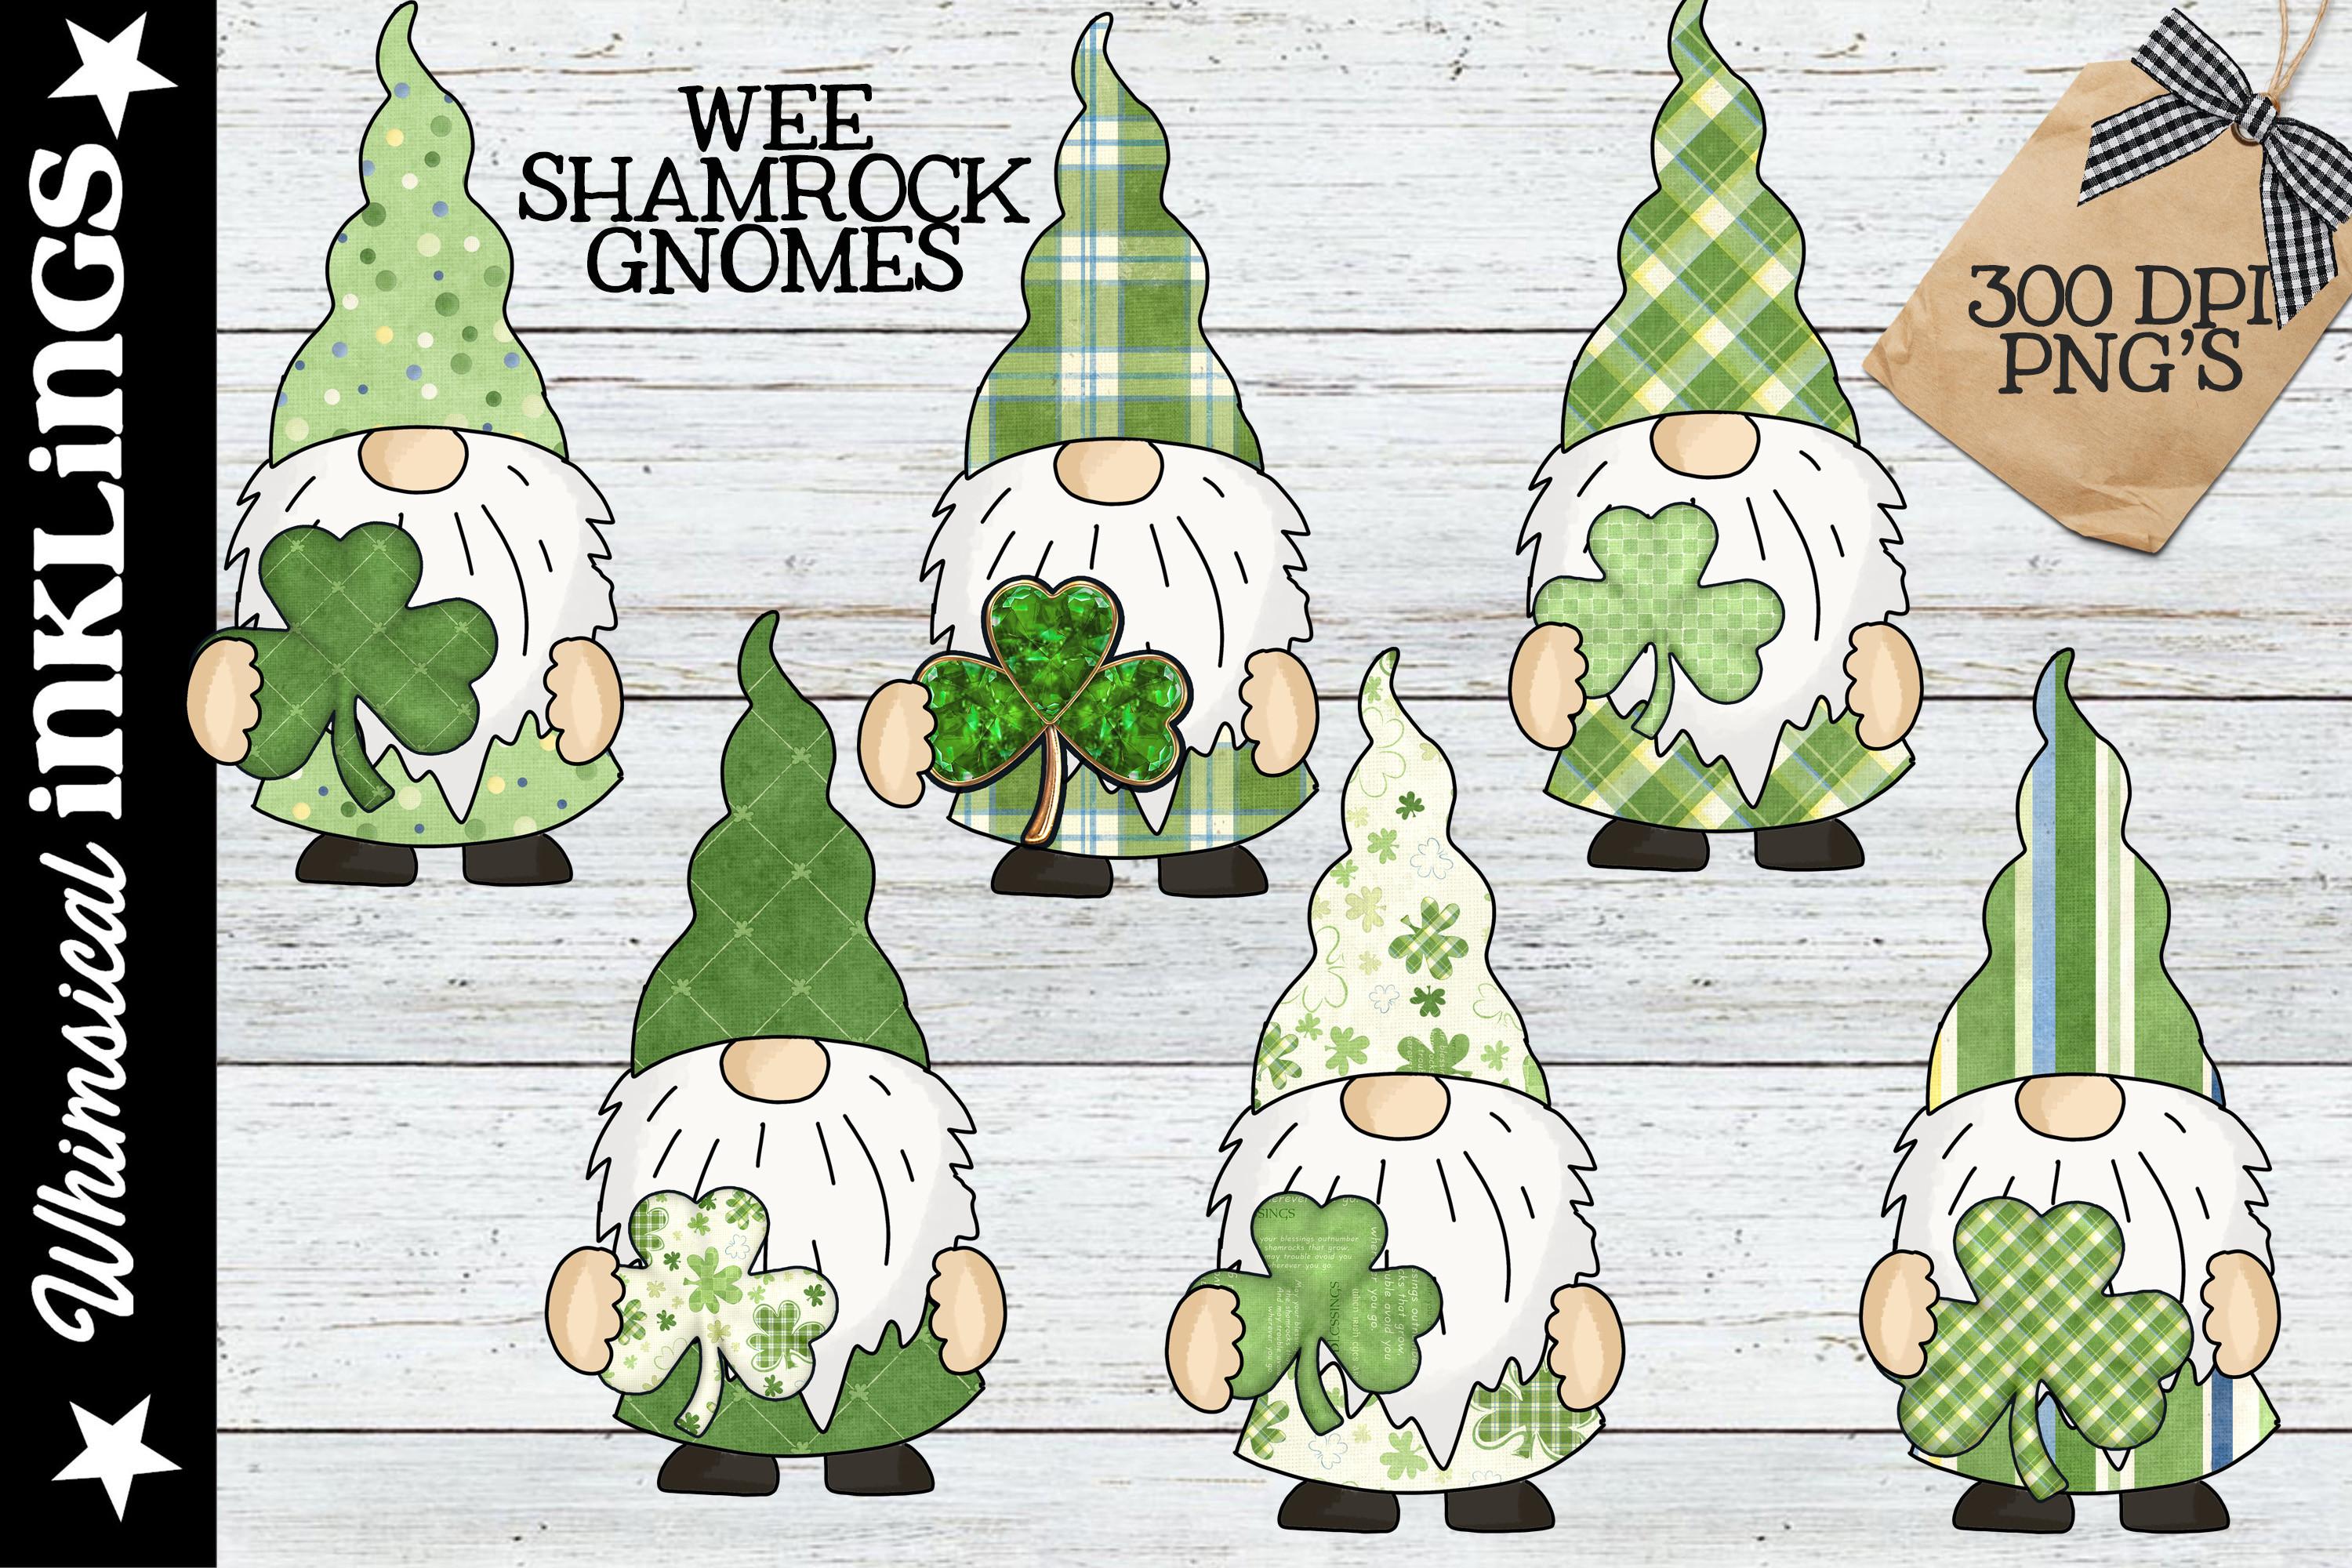 Wee Shamrock Gnomes